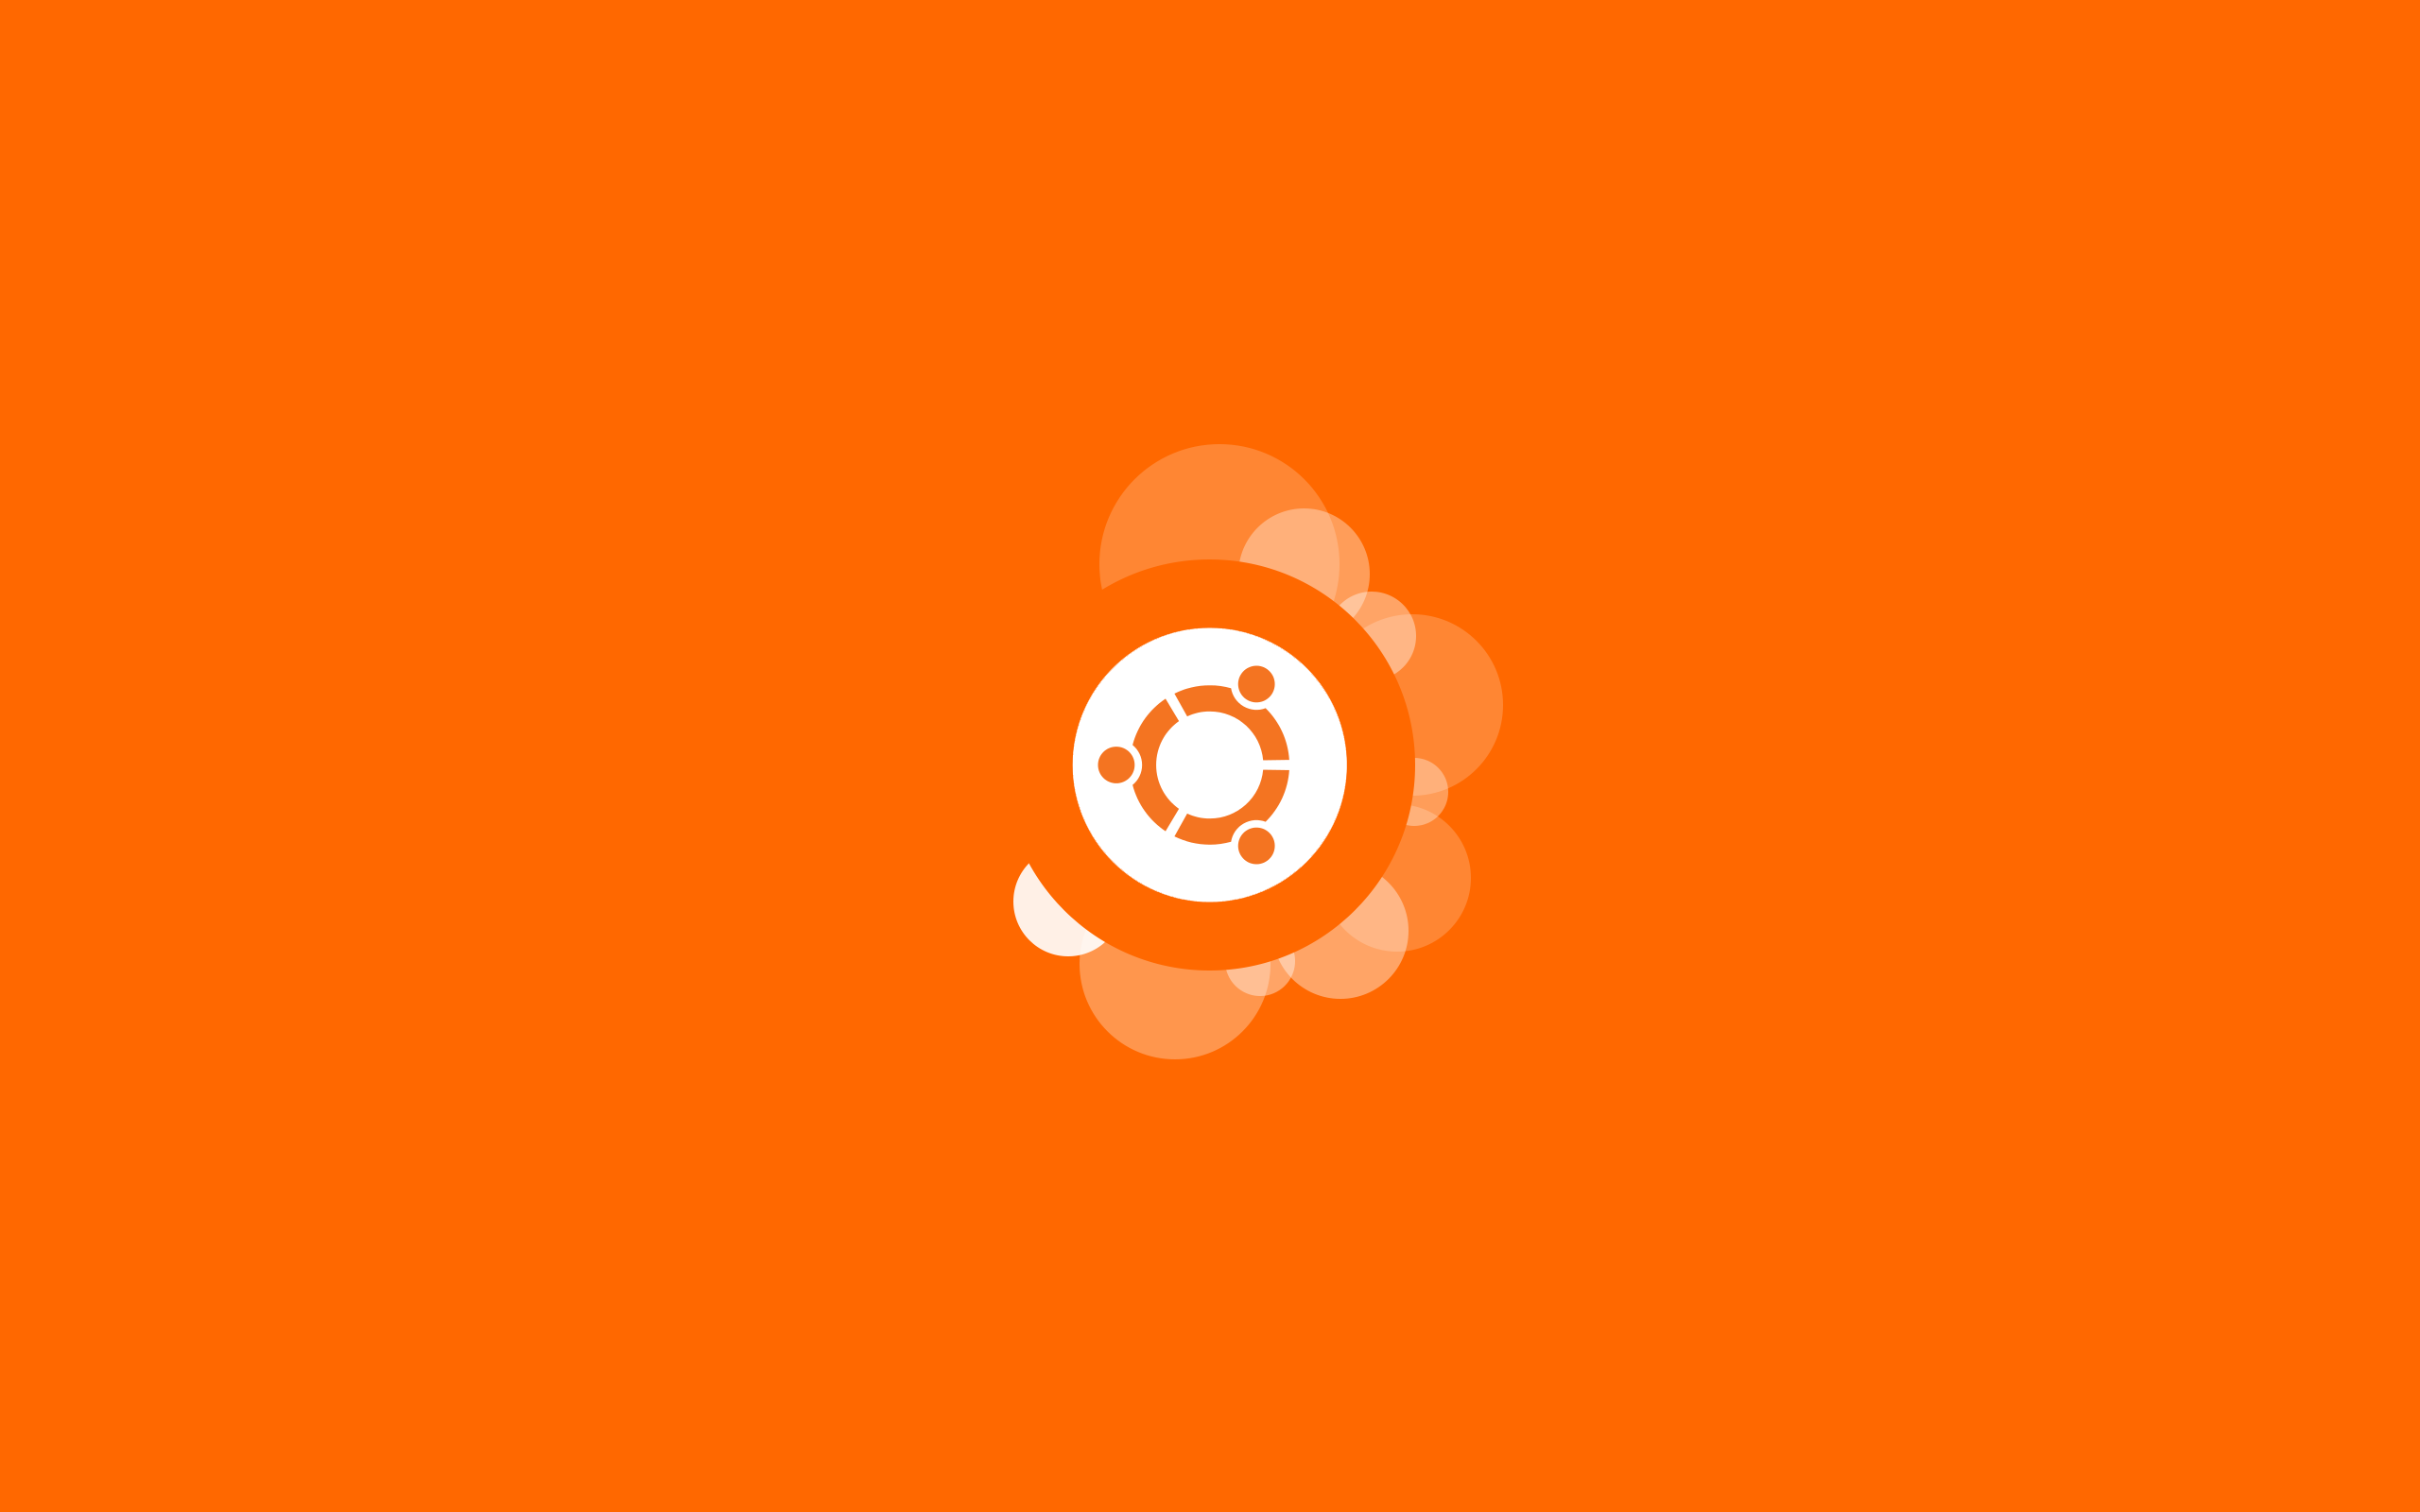 General 2560x1600 Ubuntu orange operating system logo minimalism orange background